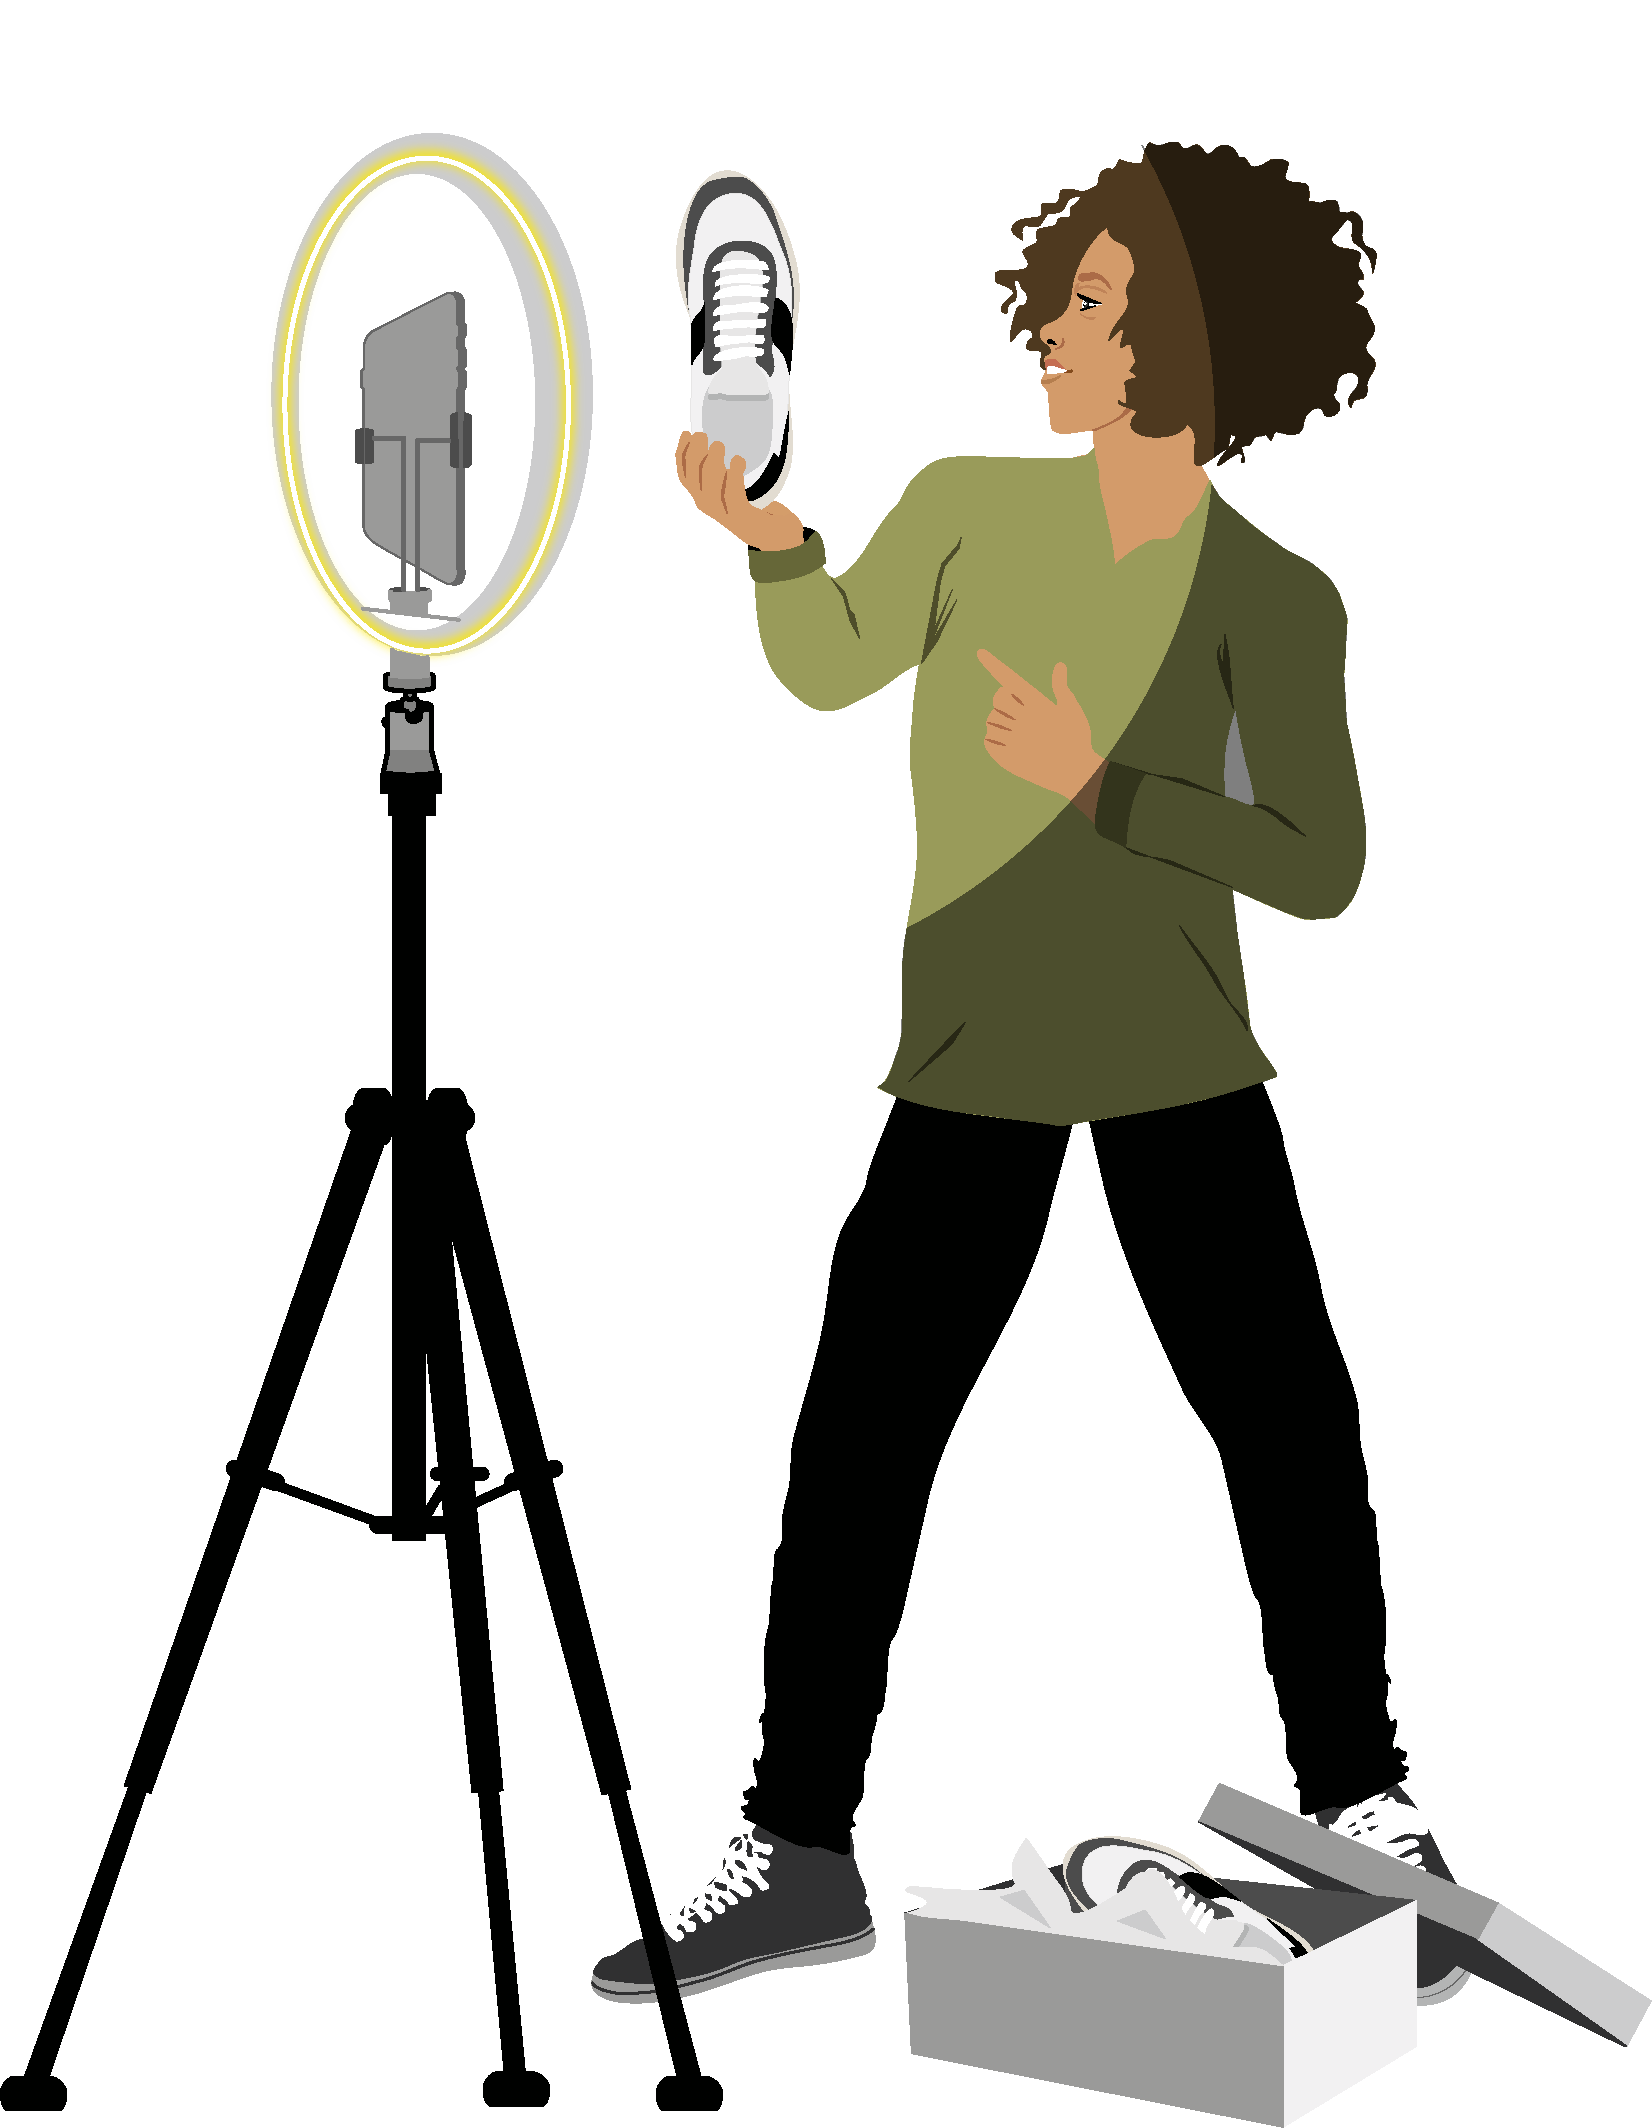 Lernmedien Illustration Sekundarstufe 1 | Socialmedia: Eine Jugendliche stellt im Rollenspiel eine Influencerin dar und hält mit strahlendem Lächeln einen schicken weißgrauen Sportschuh vor ihre, auf einem Stativ mit Ringlicht befestigte Smartphone-Kamera.